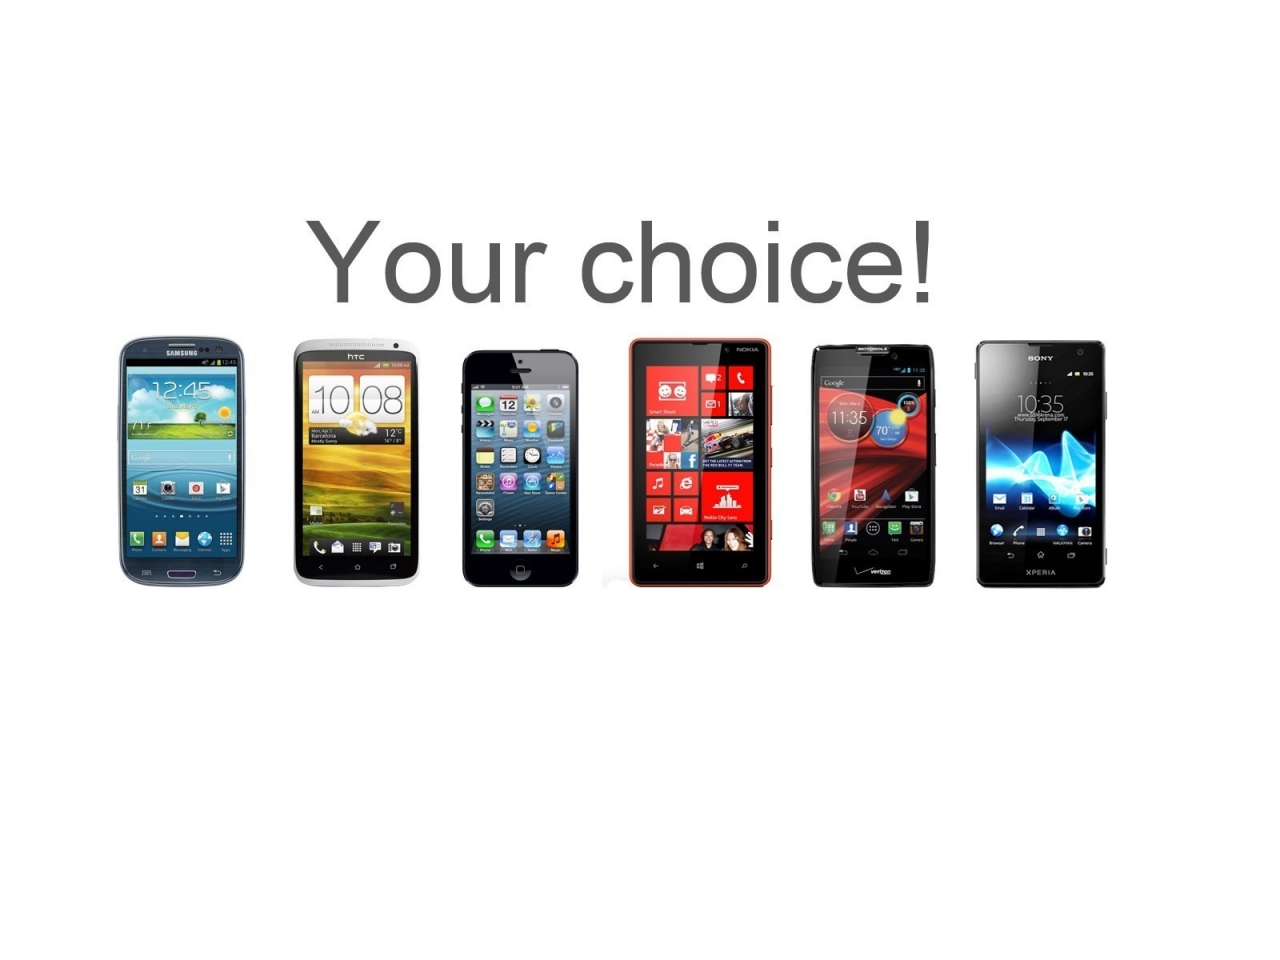 Top Smartphones for 1280 x 960 resolution